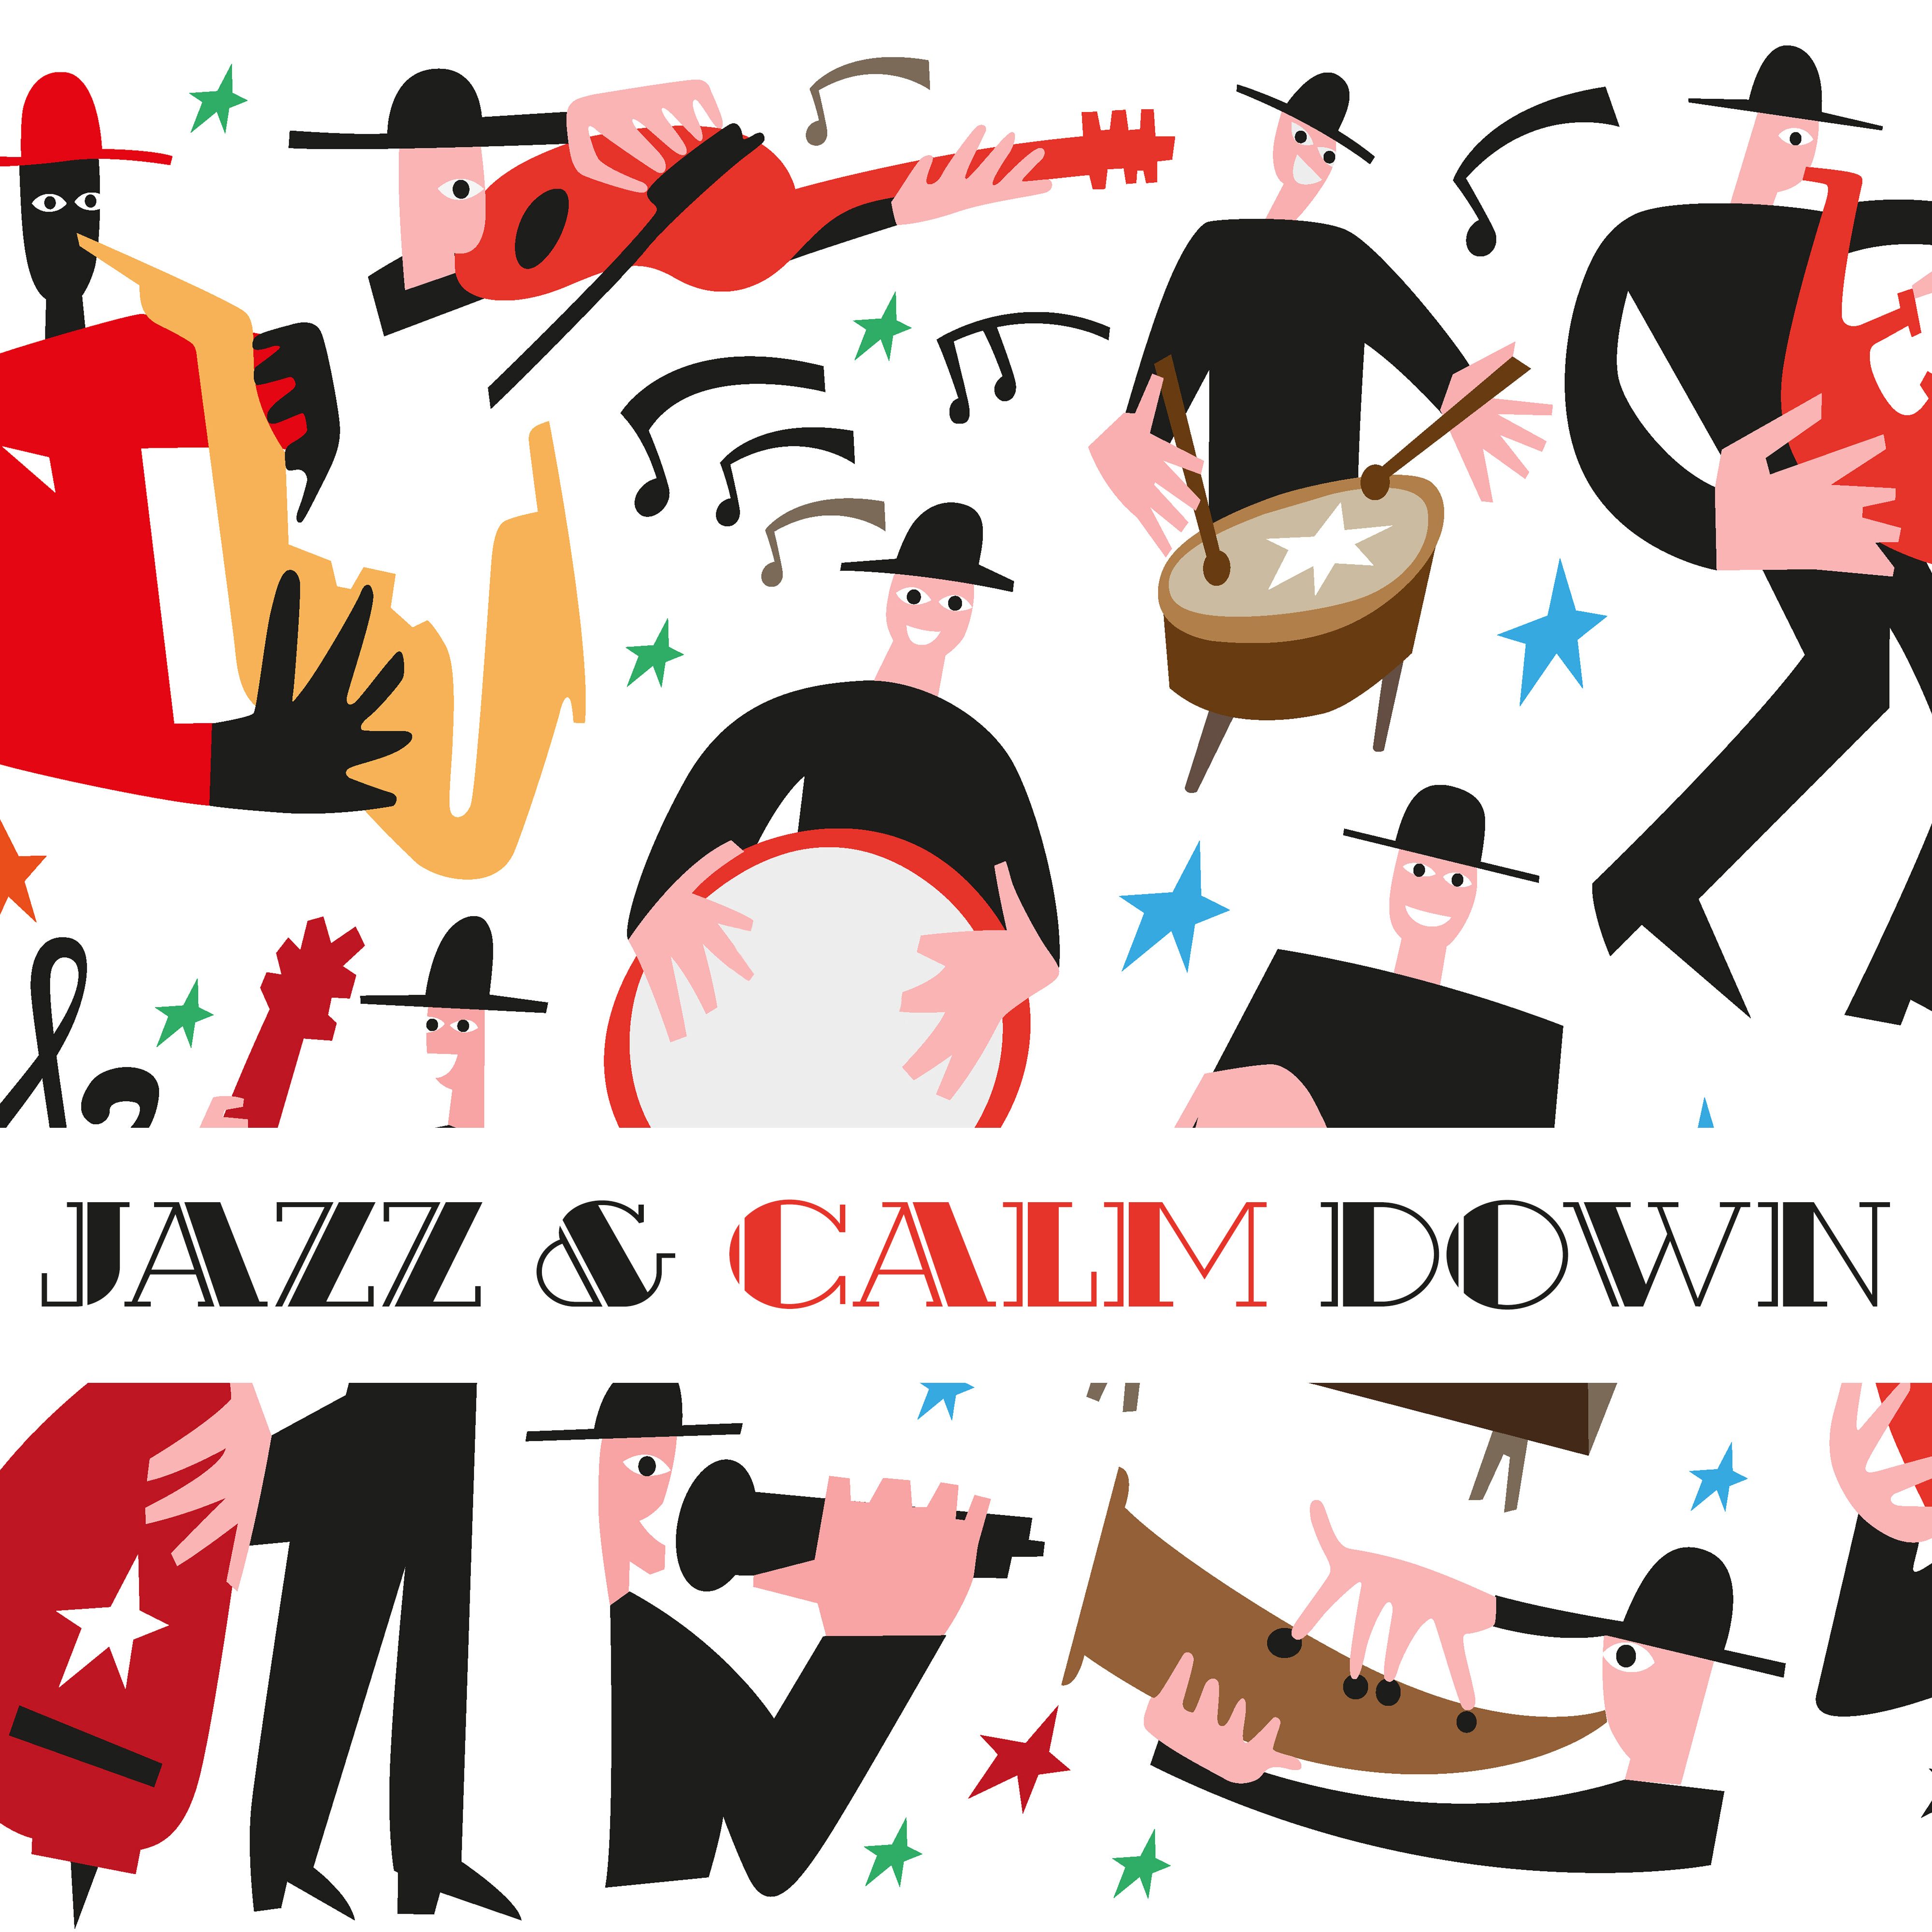 Jazz & Calm Down